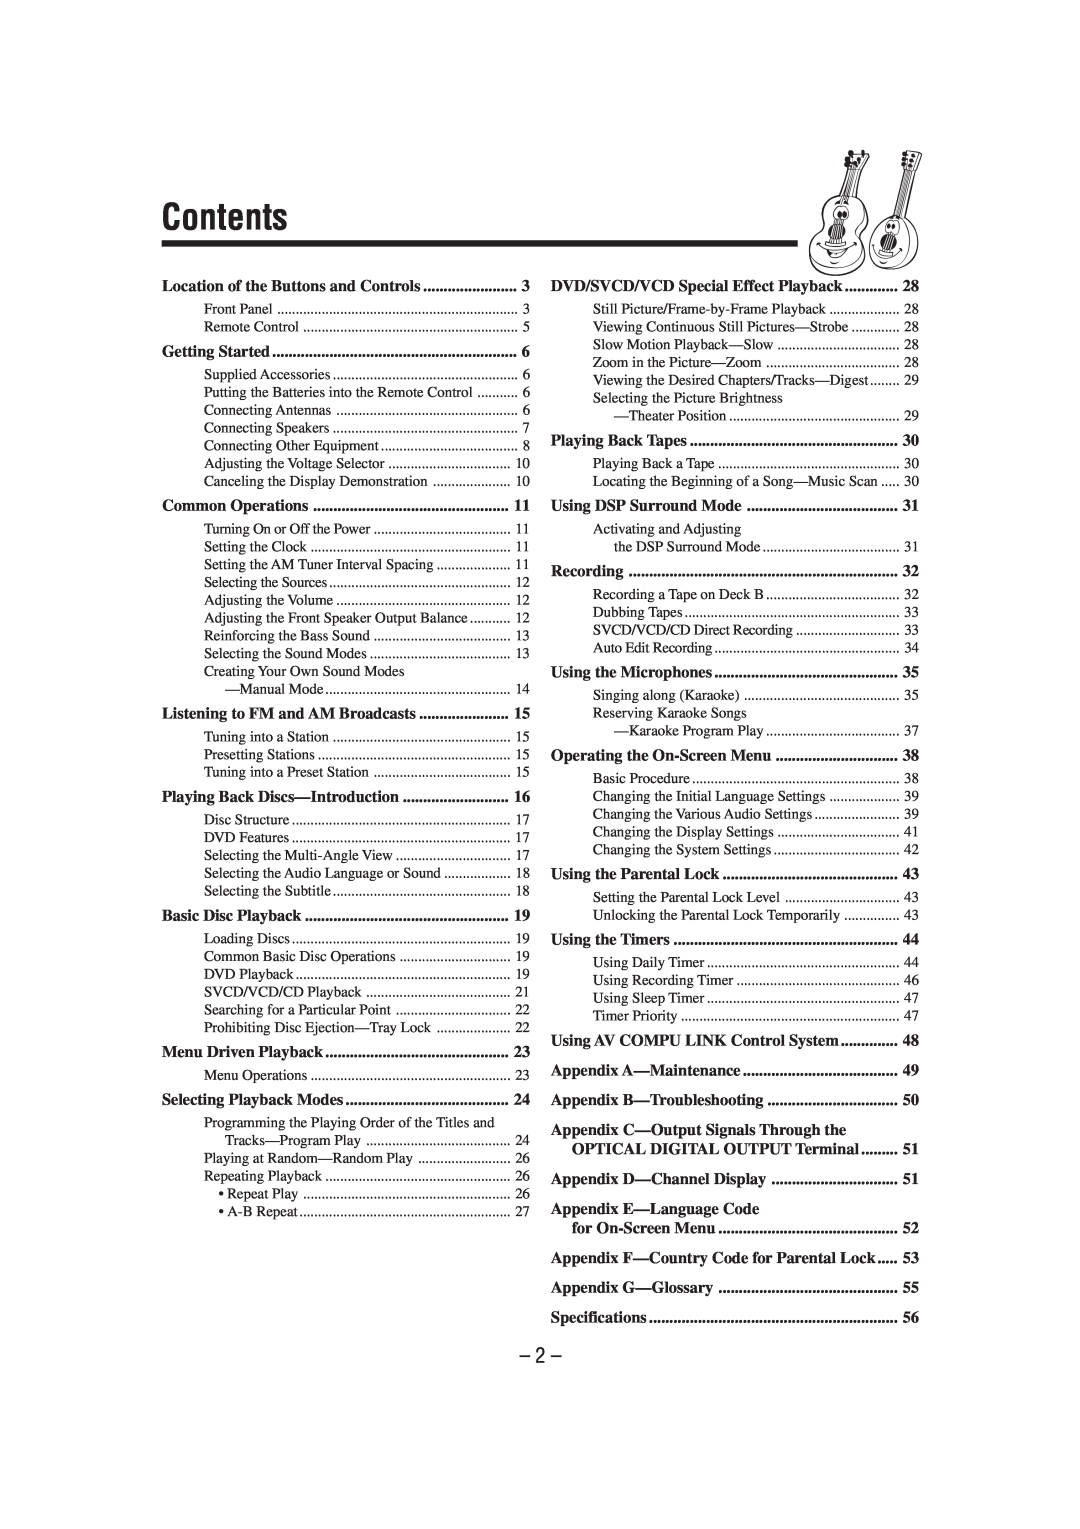 JVC CA-MXDVA9 manual Contents, Appendix C-OutputSignals Through the, Appendix E-LanguageCode 